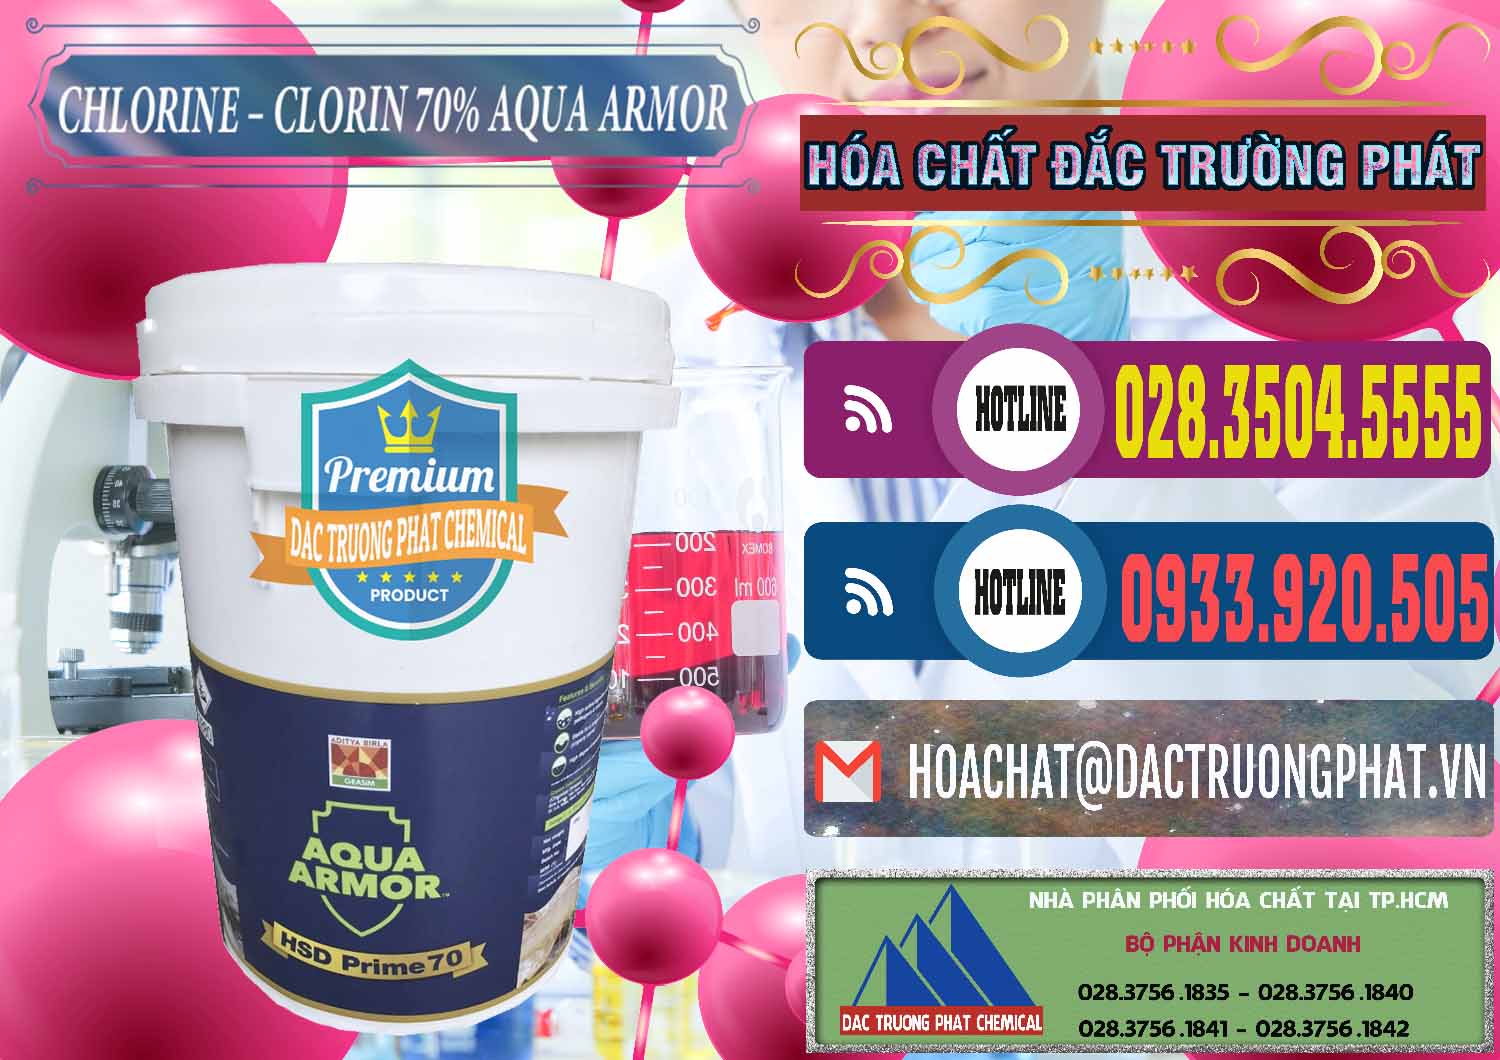 Nơi bán - cung ứng Chlorine – Clorin 70% Aqua Armor Aditya Birla Grasim Ấn Độ India - 0241 - Cty chuyên phân phối _ nhập khẩu hóa chất tại TP.HCM - muabanhoachat.com.vn